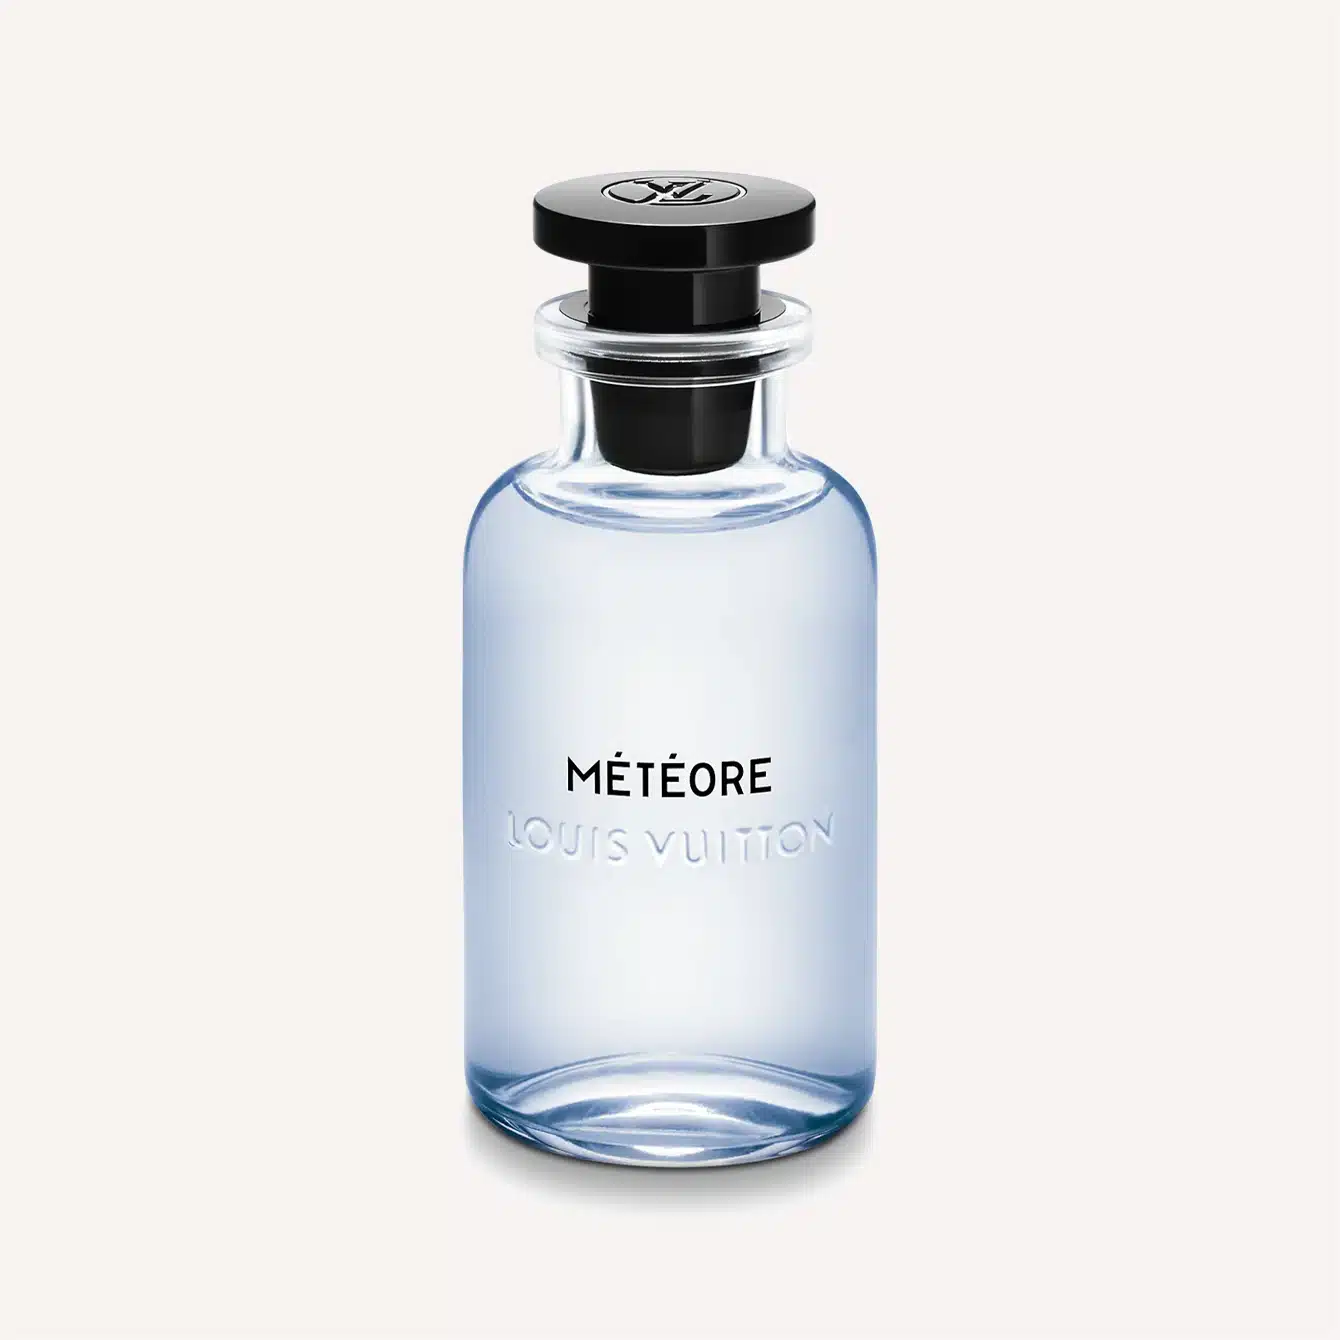 LOUIS VUITTON fragrance review CACTUS GARDEN - LV perfume 